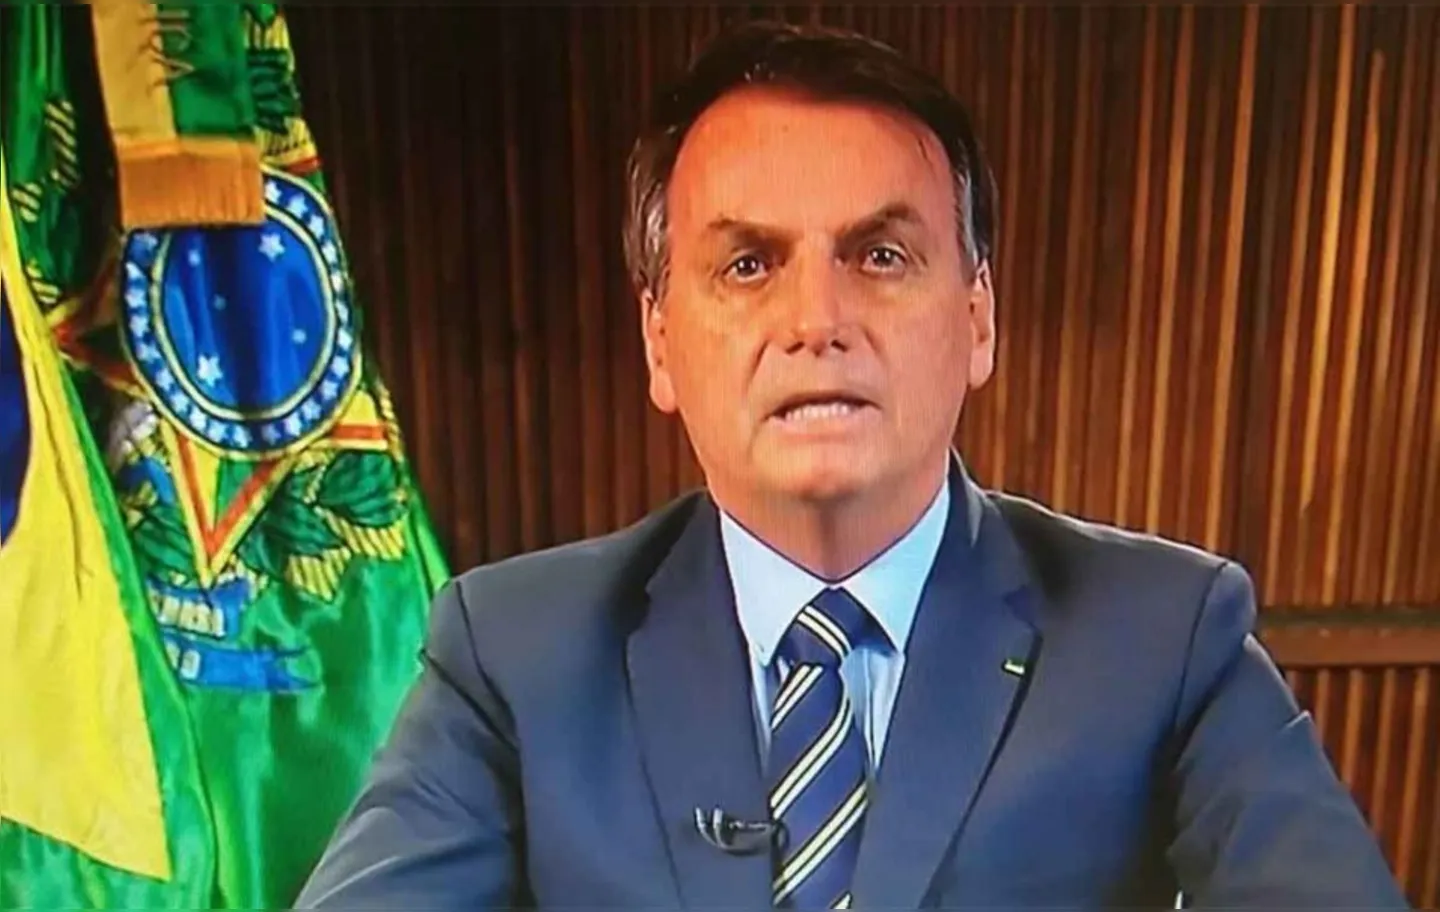 De acordo com Bolsonaro, bani-lo das redes sociais seria algo ""fora das quatro linhas" da Constituição..